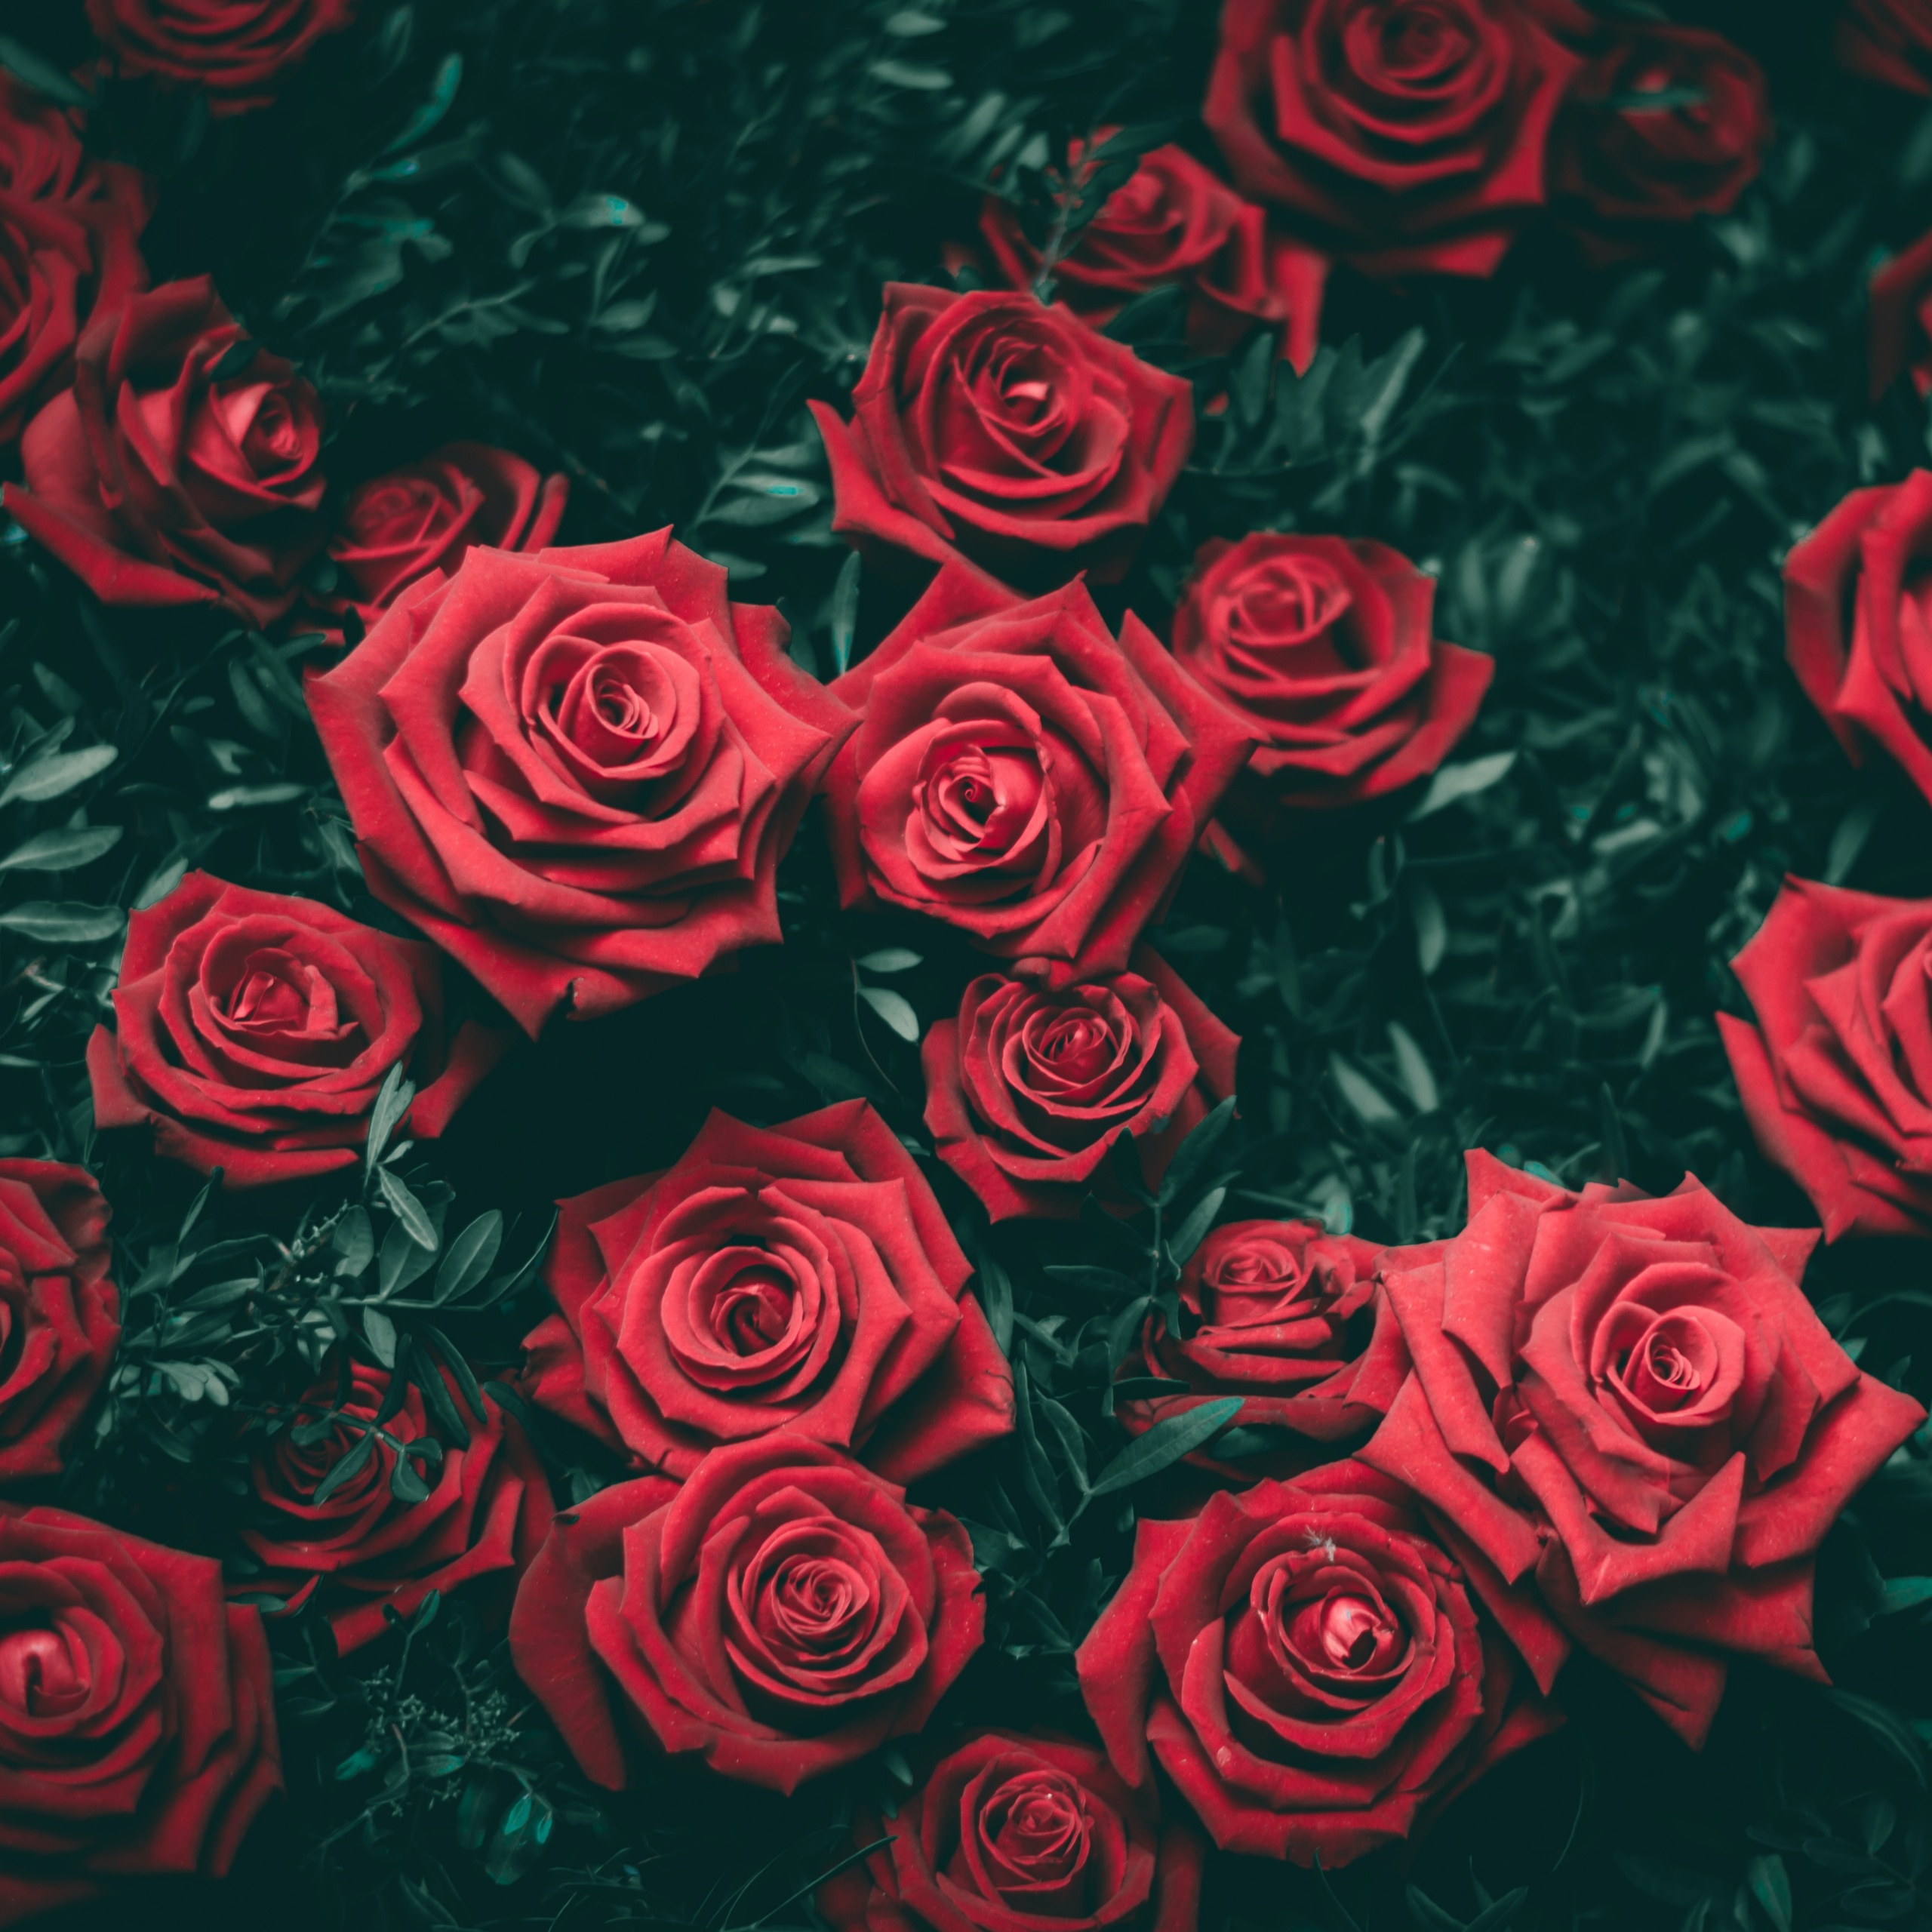 Hình nền hoa hồng đỏ 4K này chắc chắn sẽ khiến cho trái tim của bạn nhảy múa vì sự đẹp đẽ khi được chiêm ngưỡng. Tông màu đỏ tươi sáng làm nên nét tinh tế và quý phái cho hình ảnh.